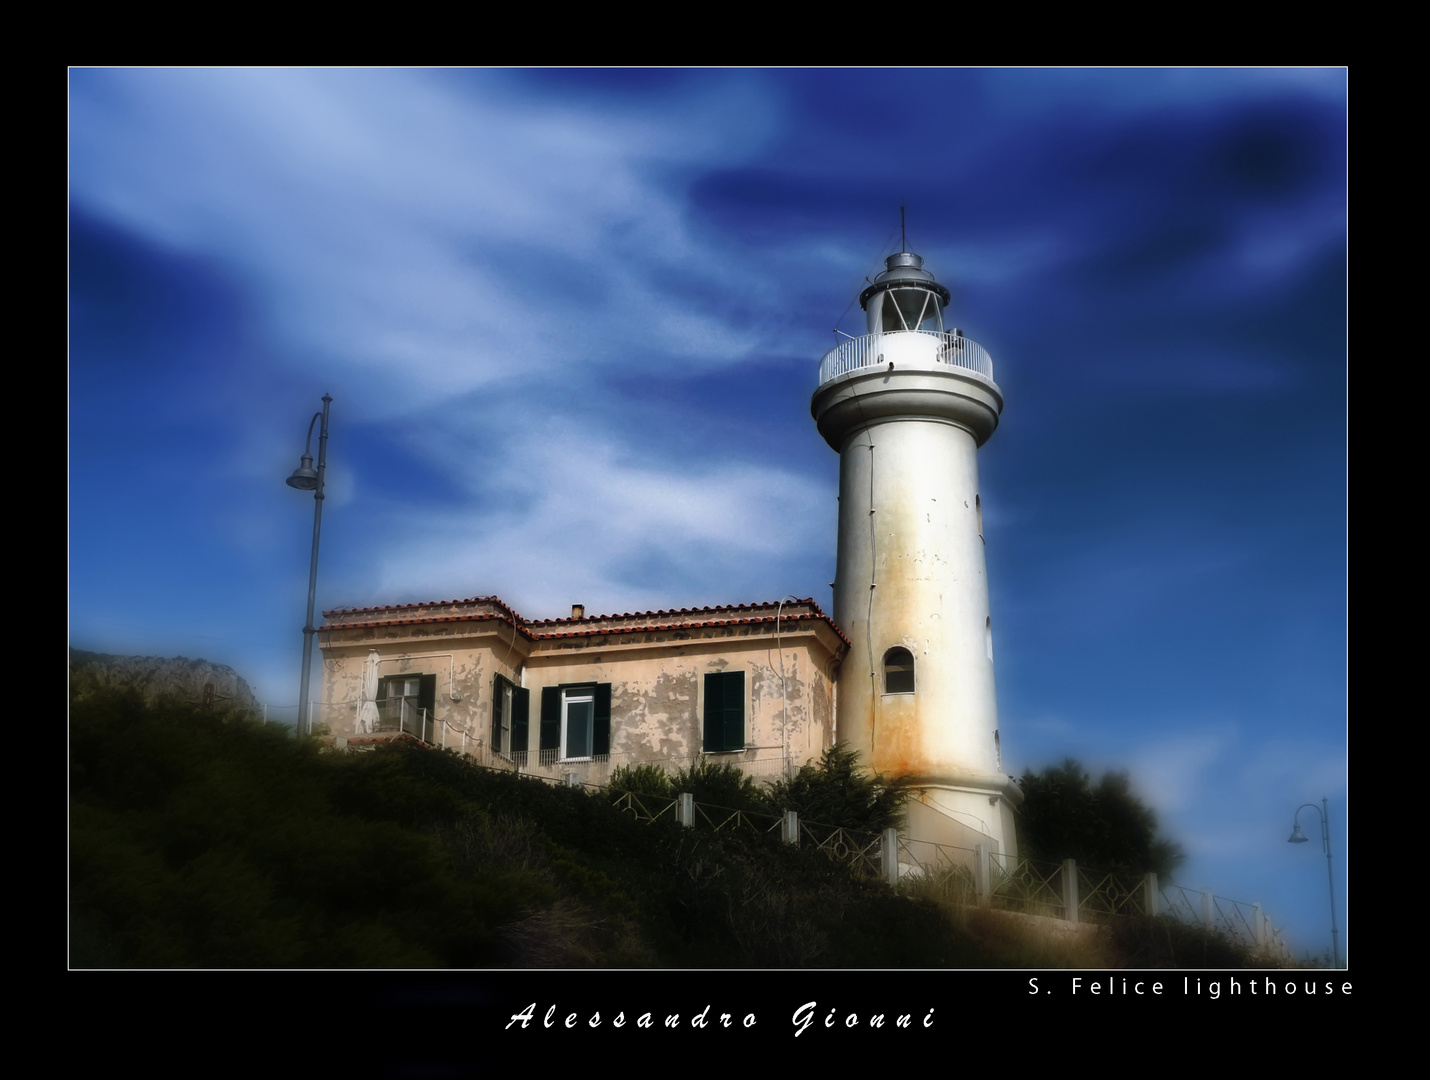 S. Felice Lighthouse